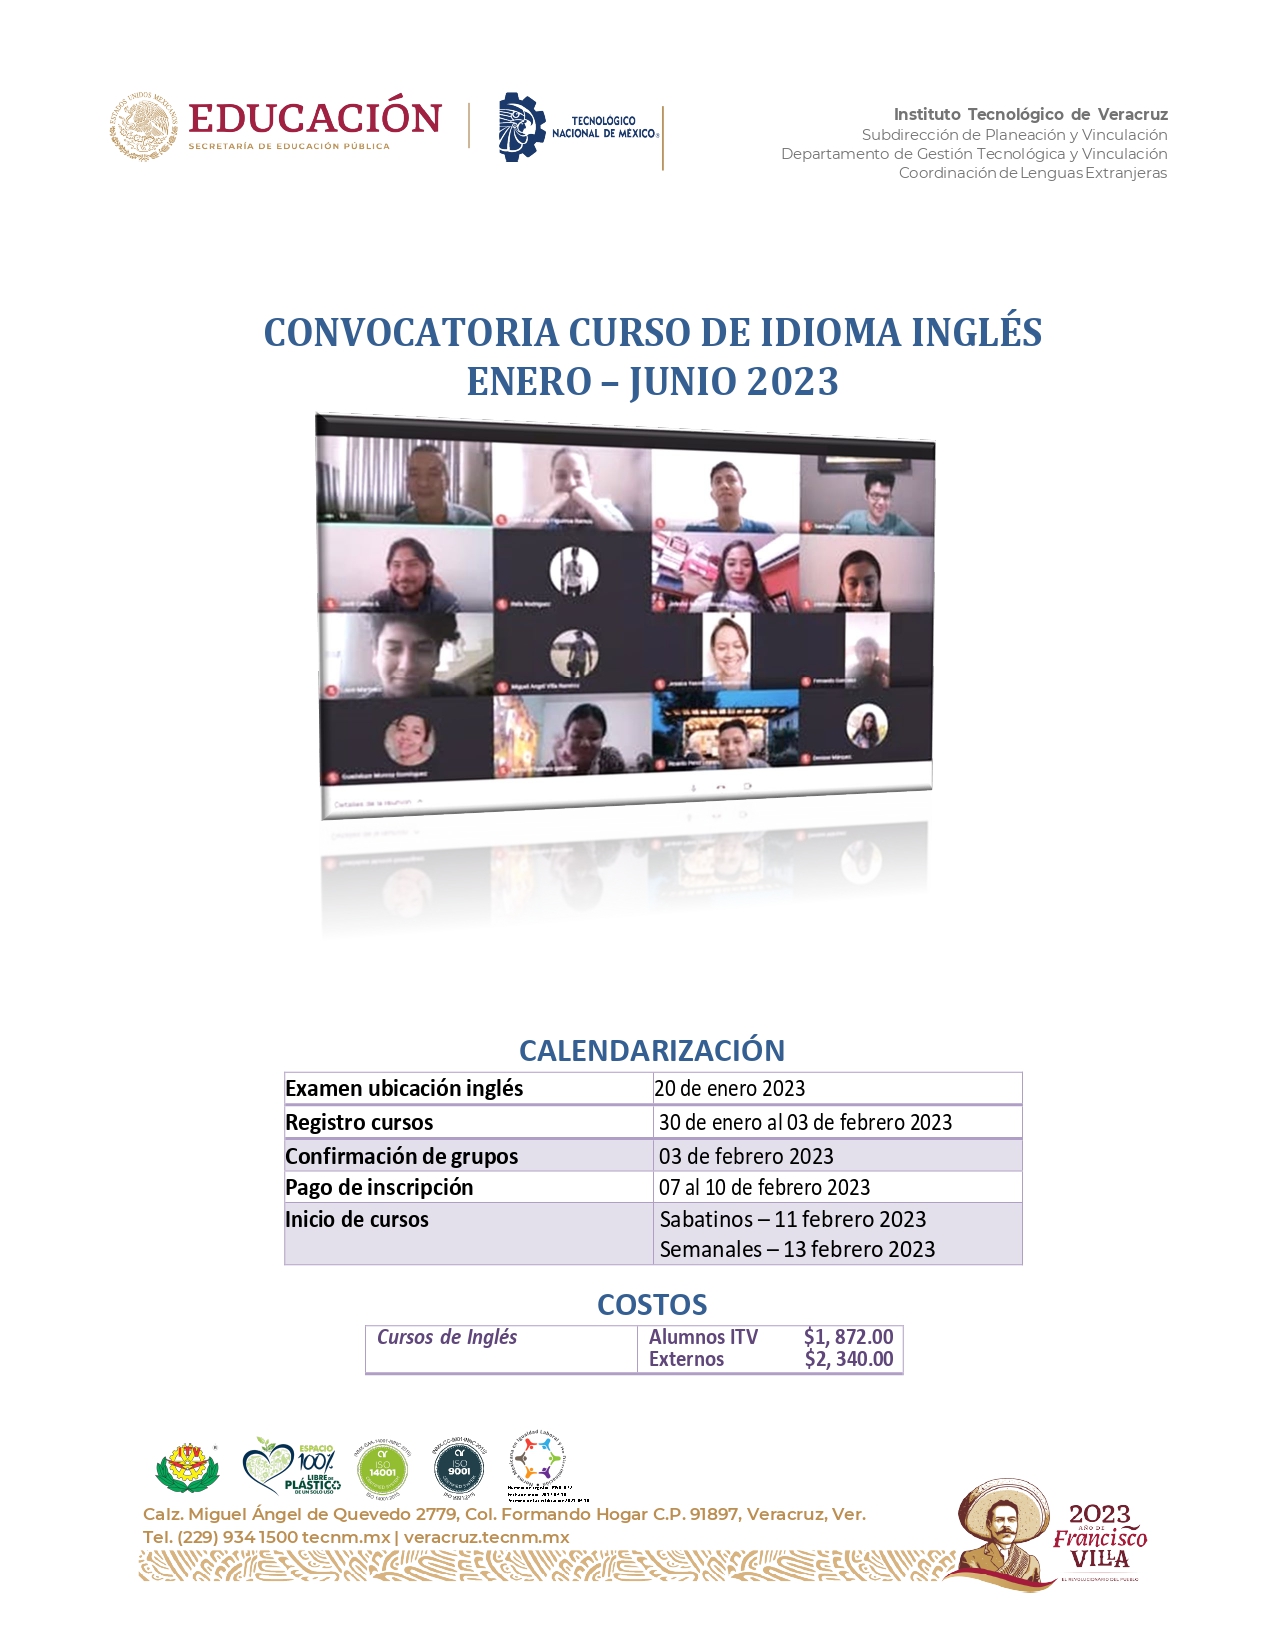 CONVOCATORIA_CURSOS_ENERO_JUNIO2023_page-0001.jpg